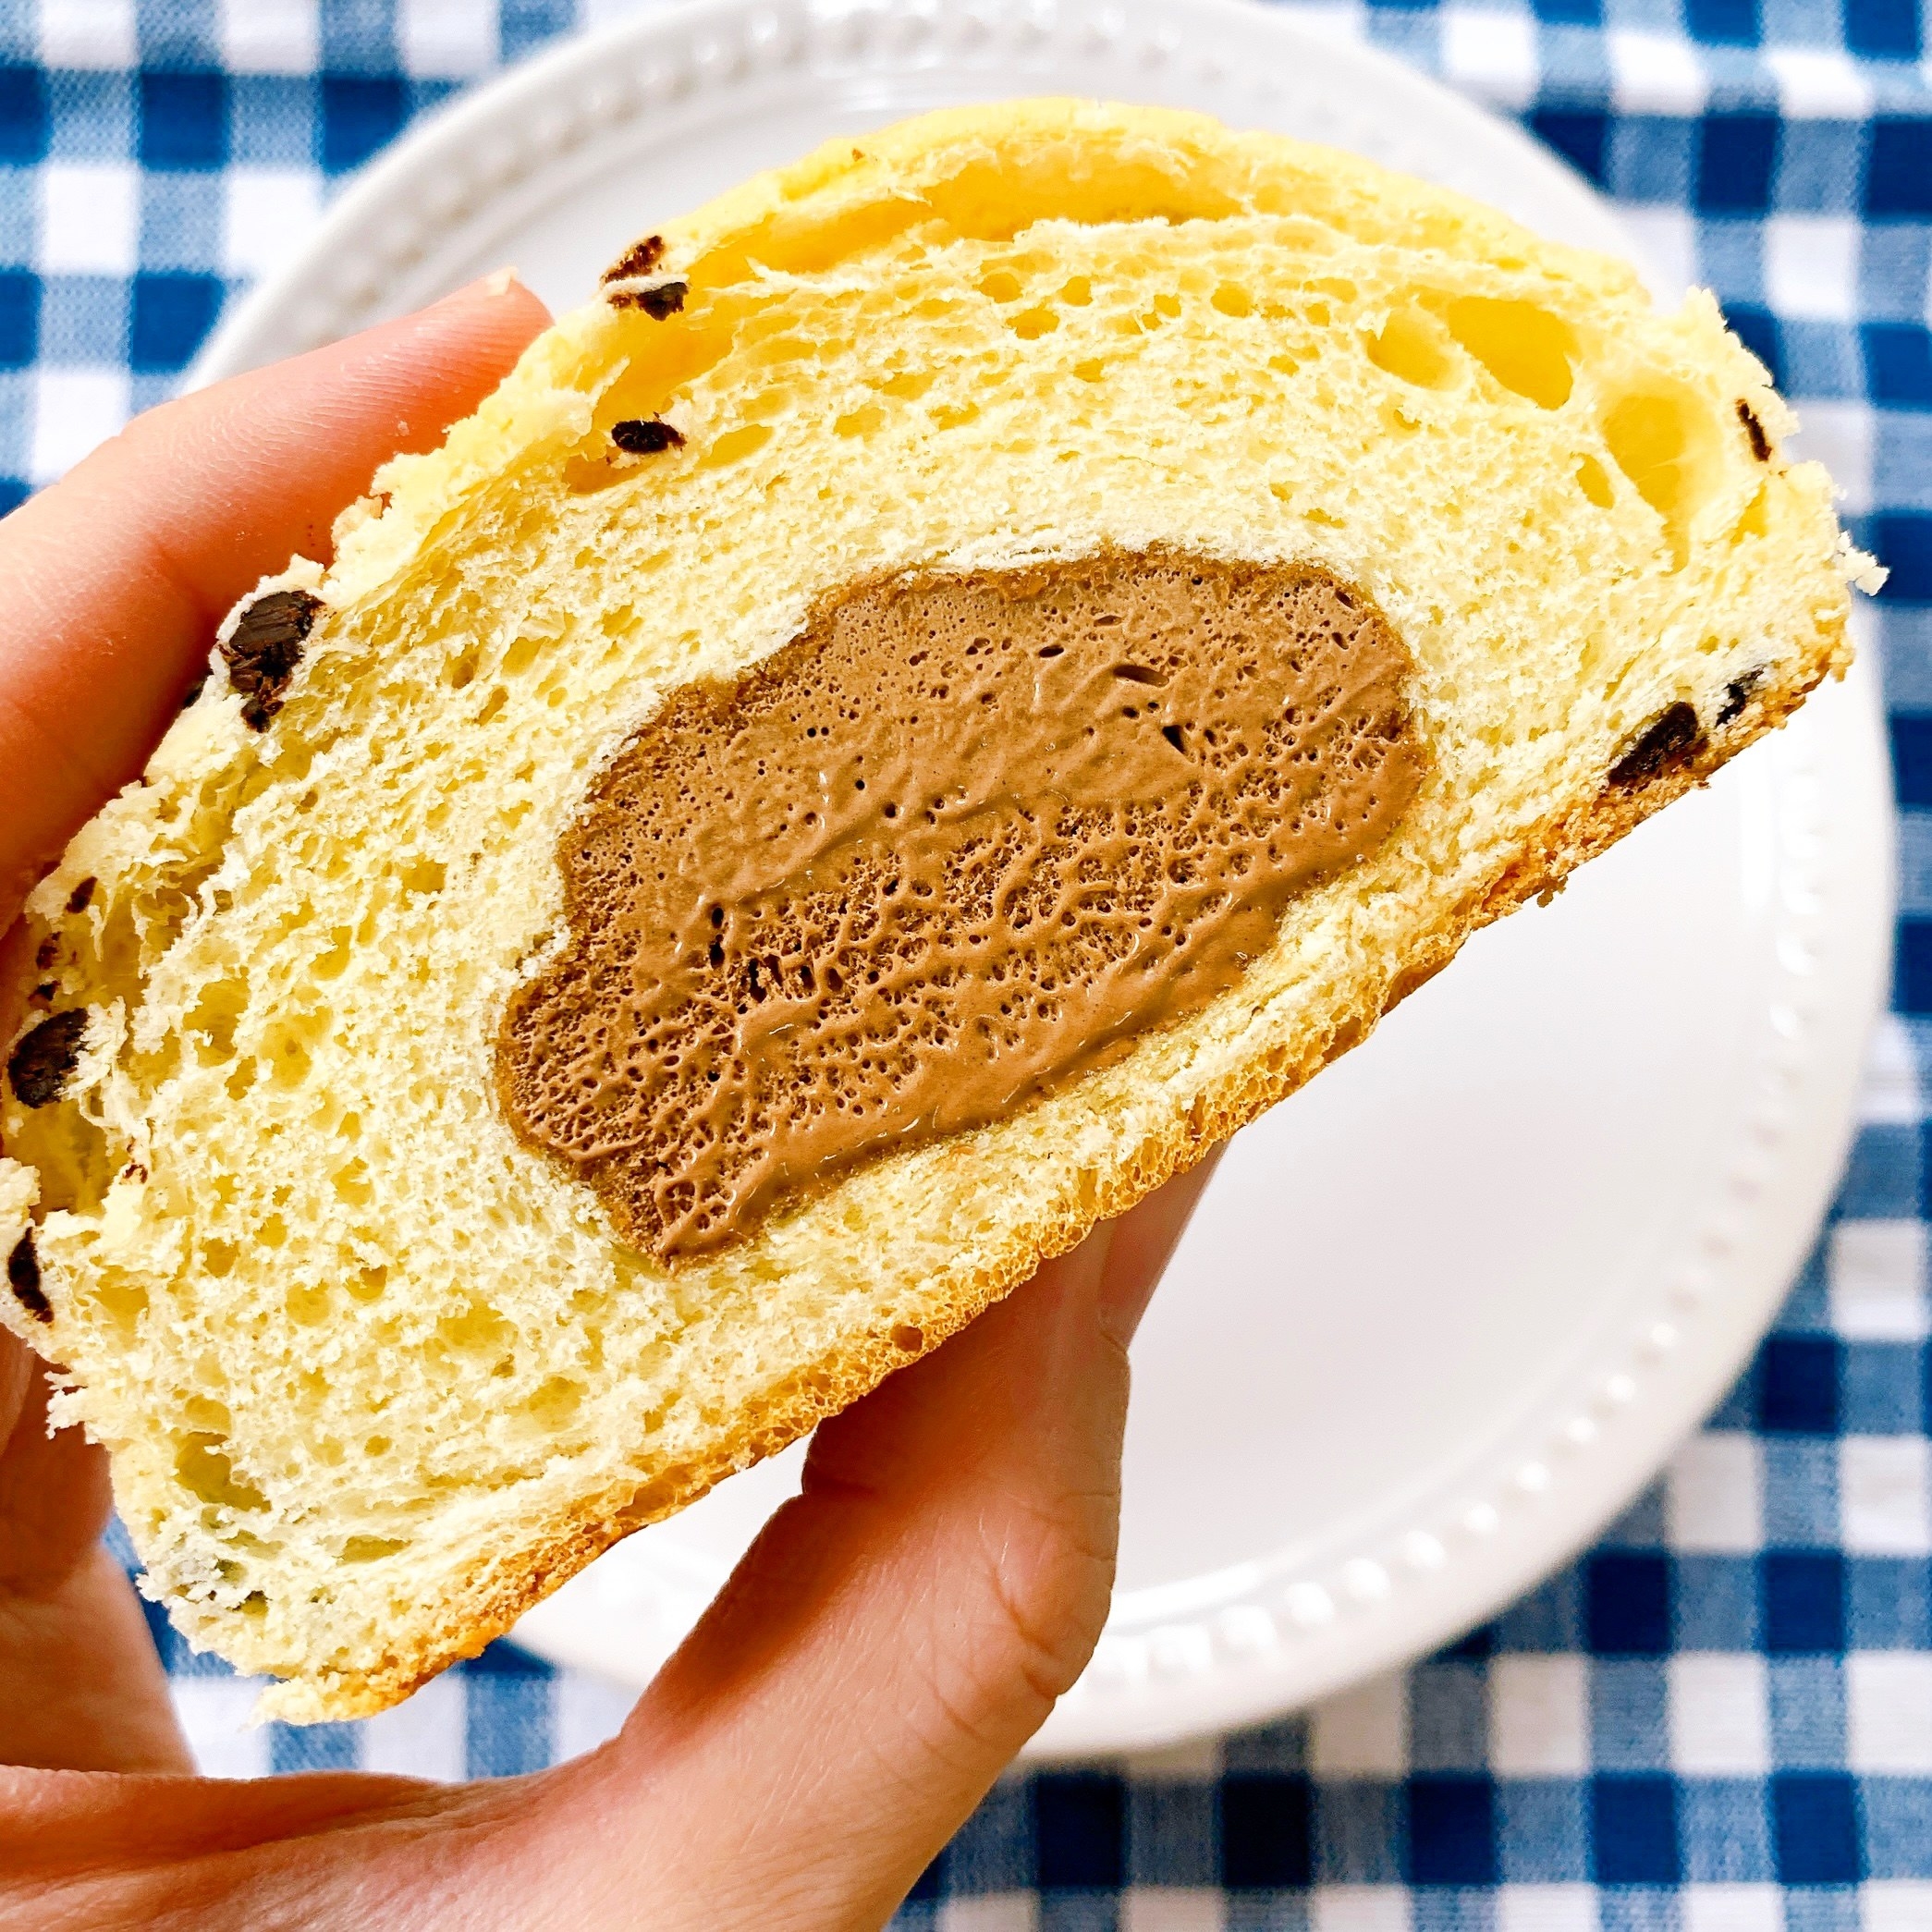 ★セブン-イレブンのおすすめデザート「7P冷たく食べる チョコチップメロンパン」色んな食感を楽しめる